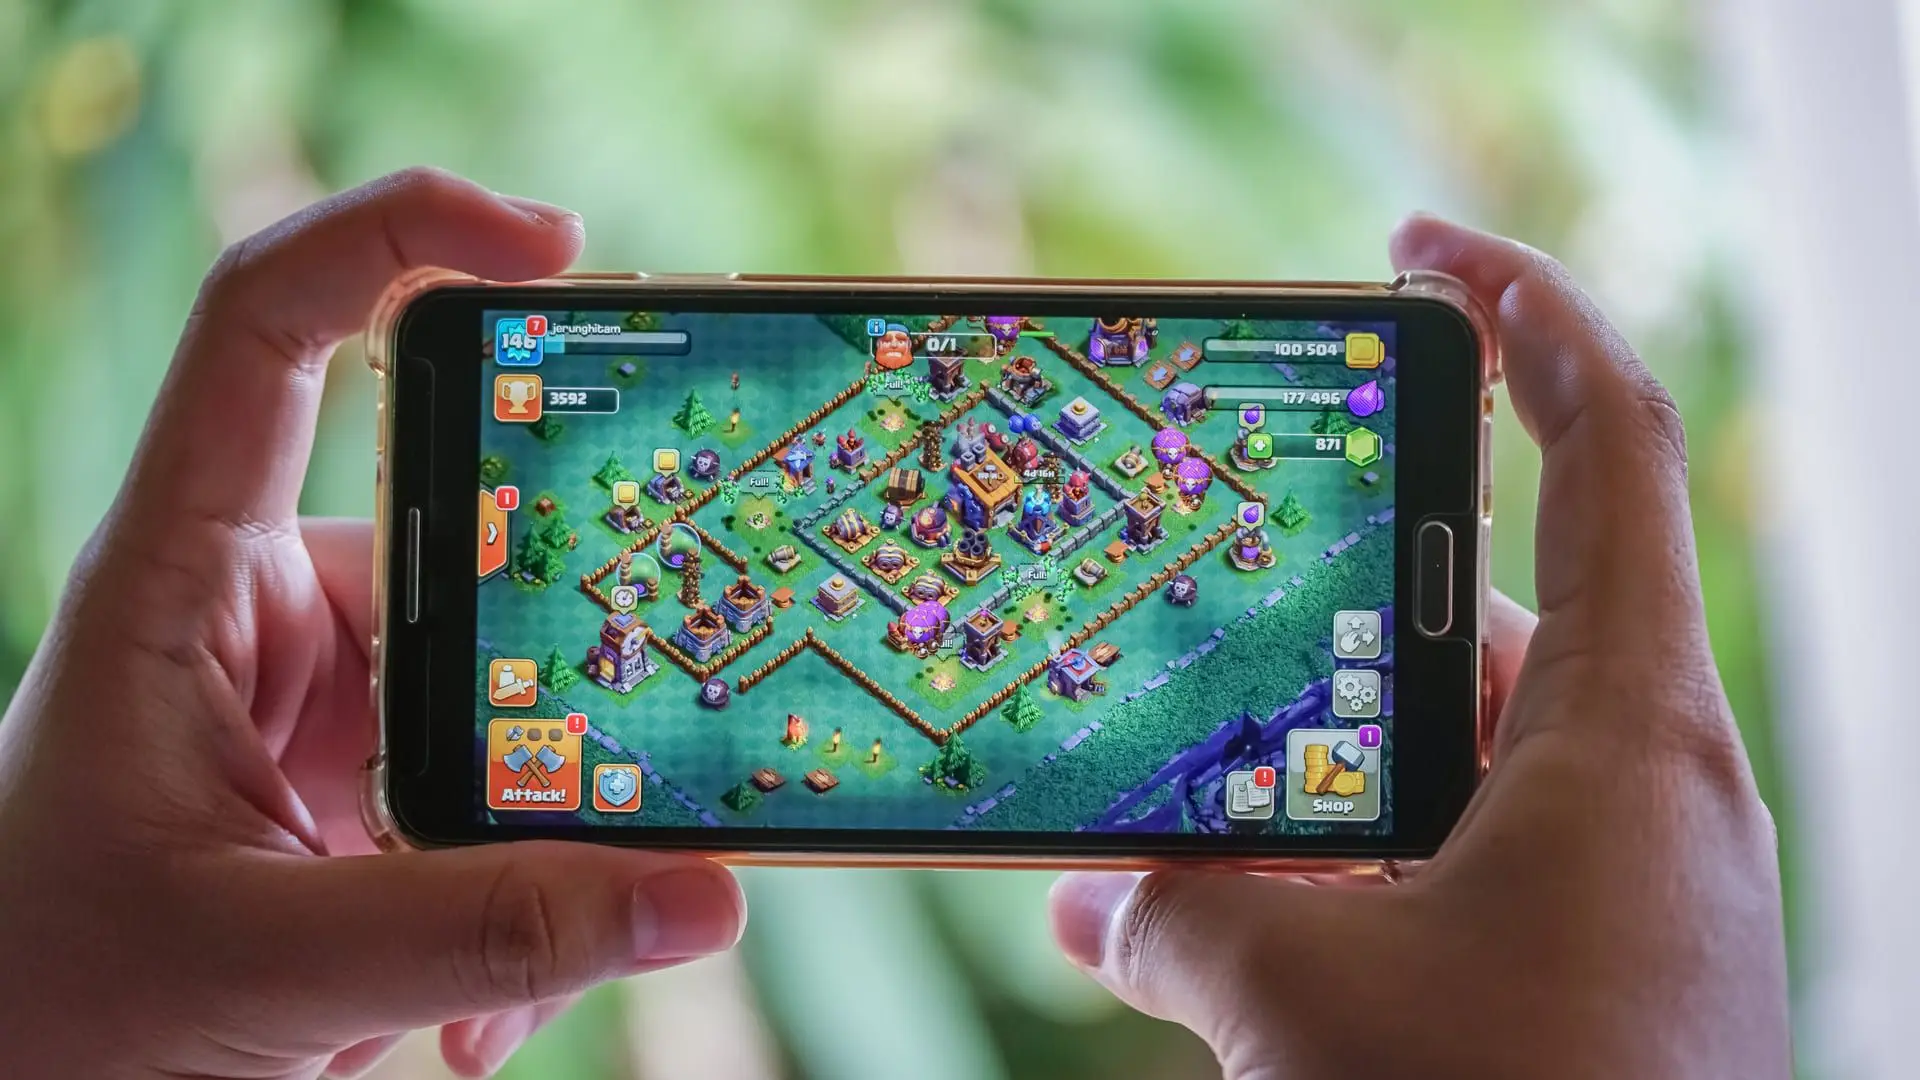 Jogos online para celular: os melhores games para jogar com amigos